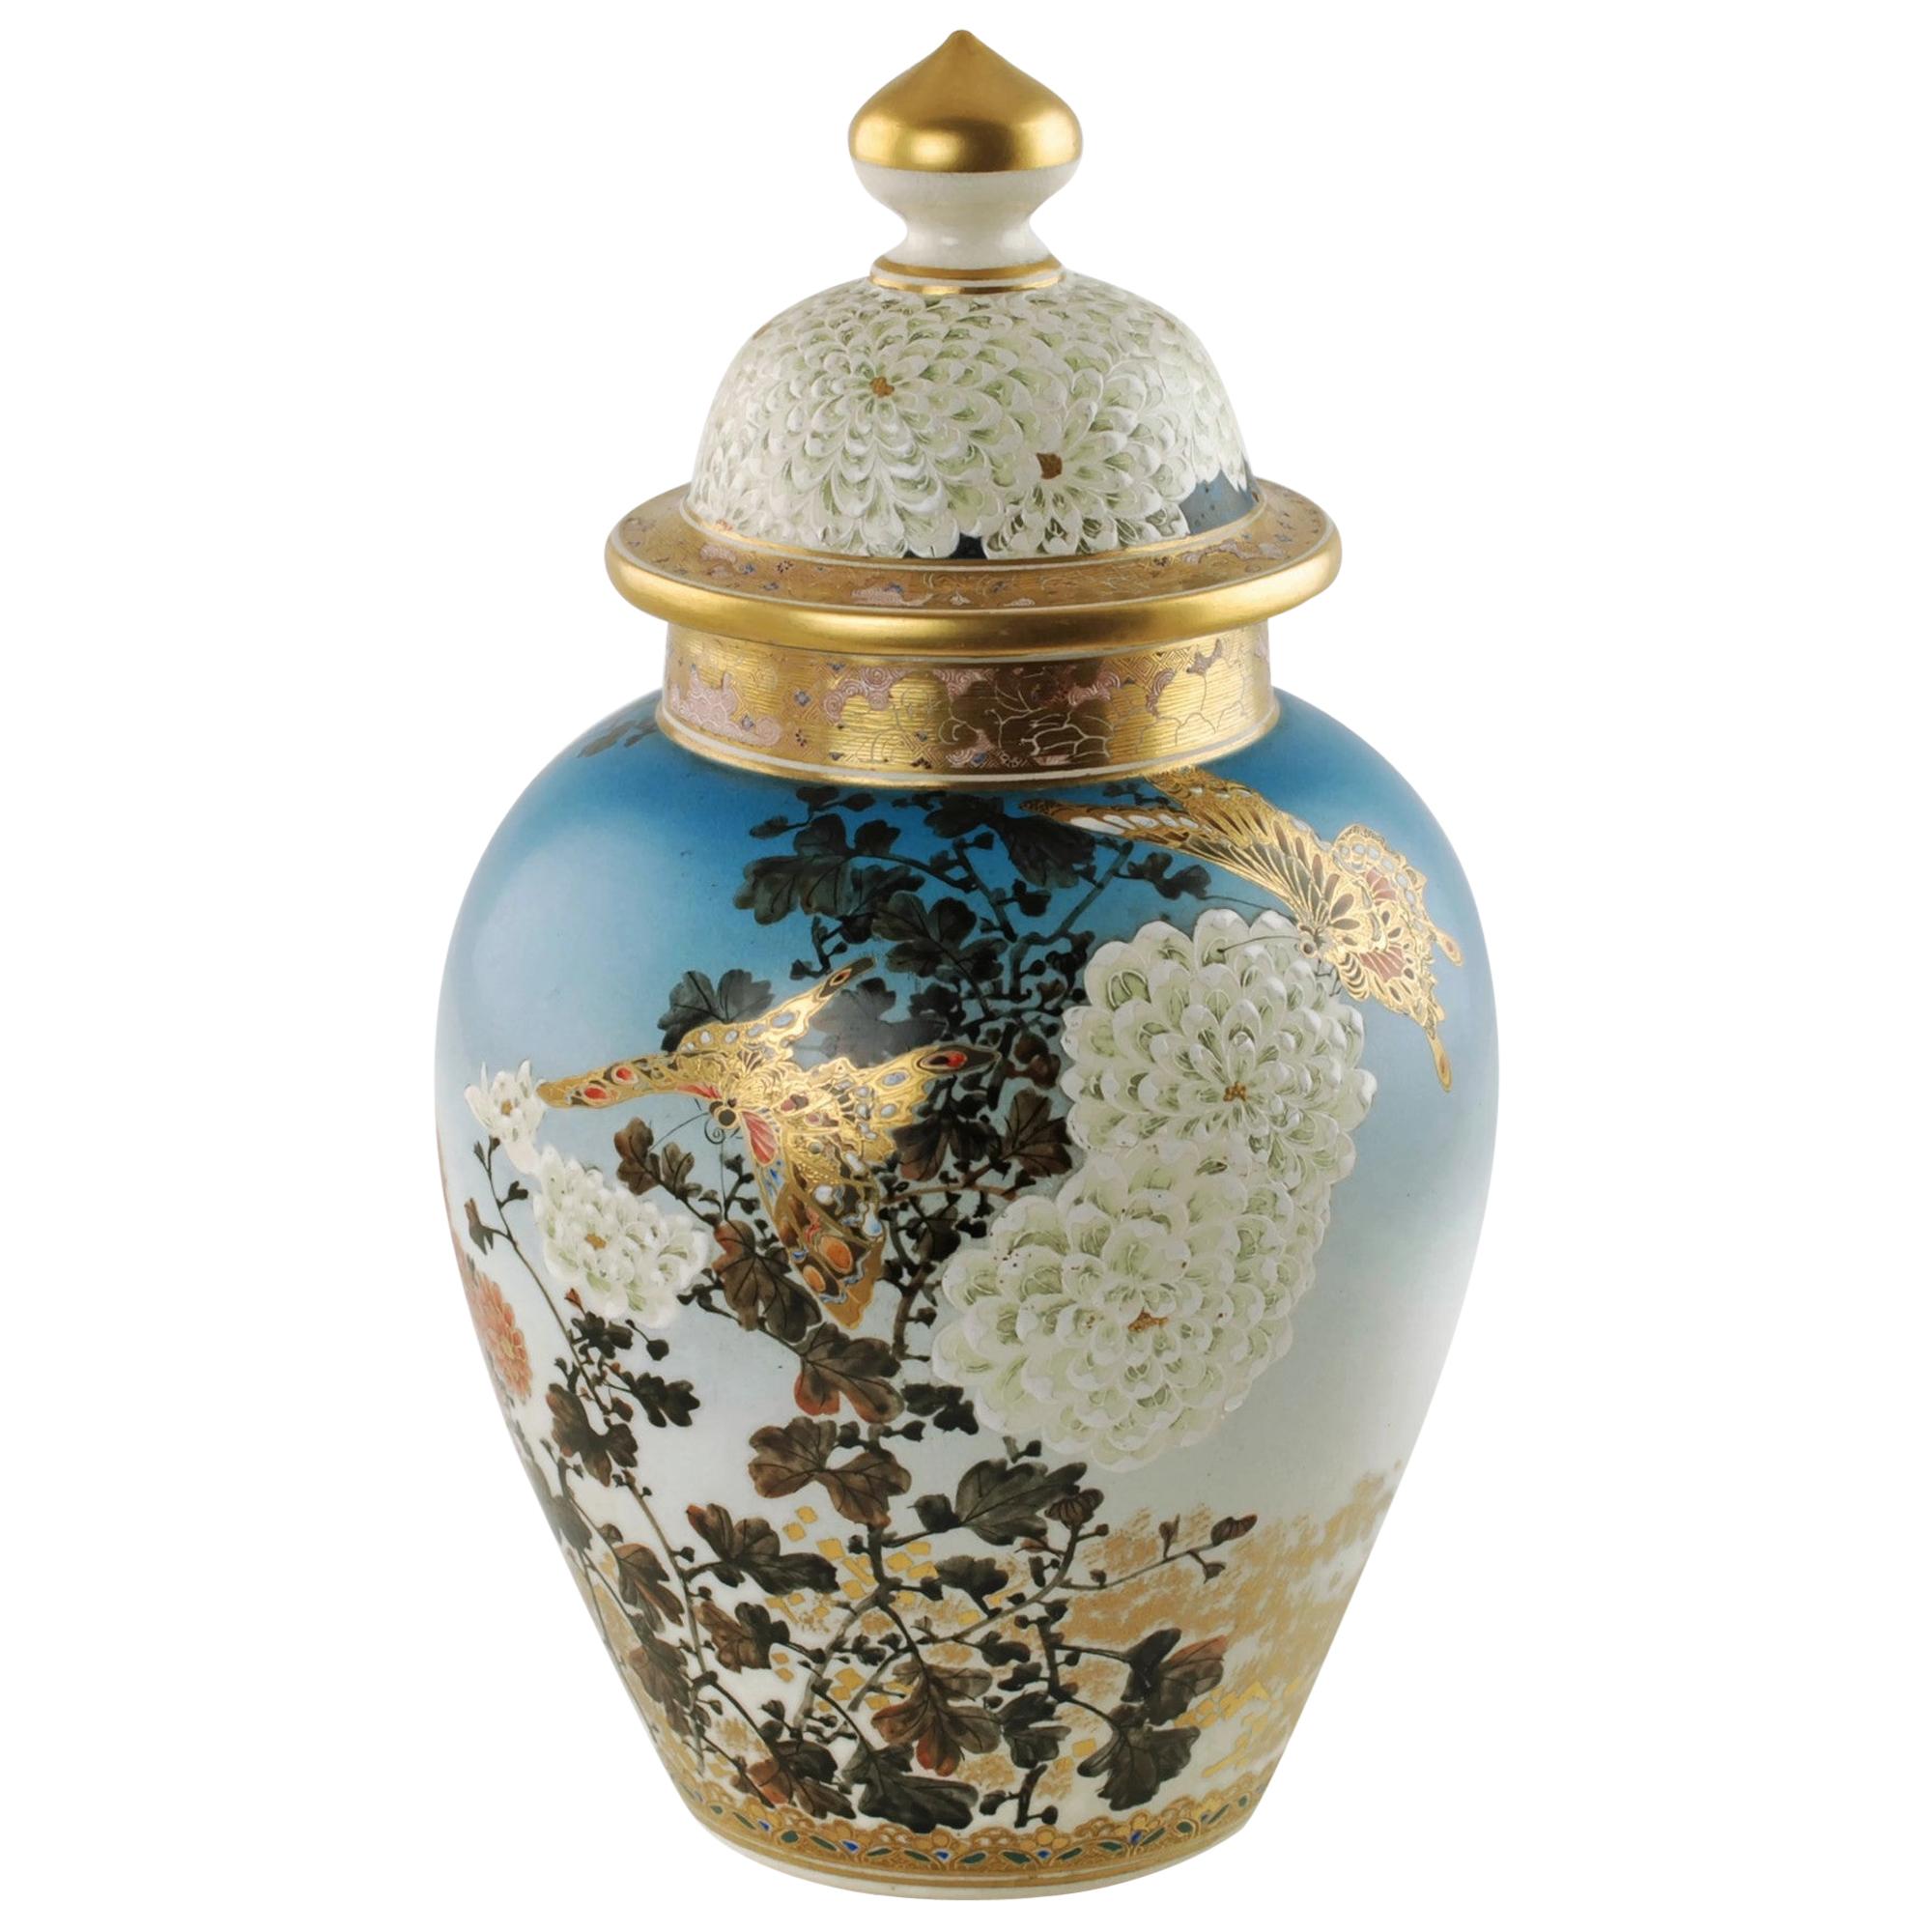 Pot de temple japonais de la fin du 19ème siècle peint à la main Satsuma Période Meiji